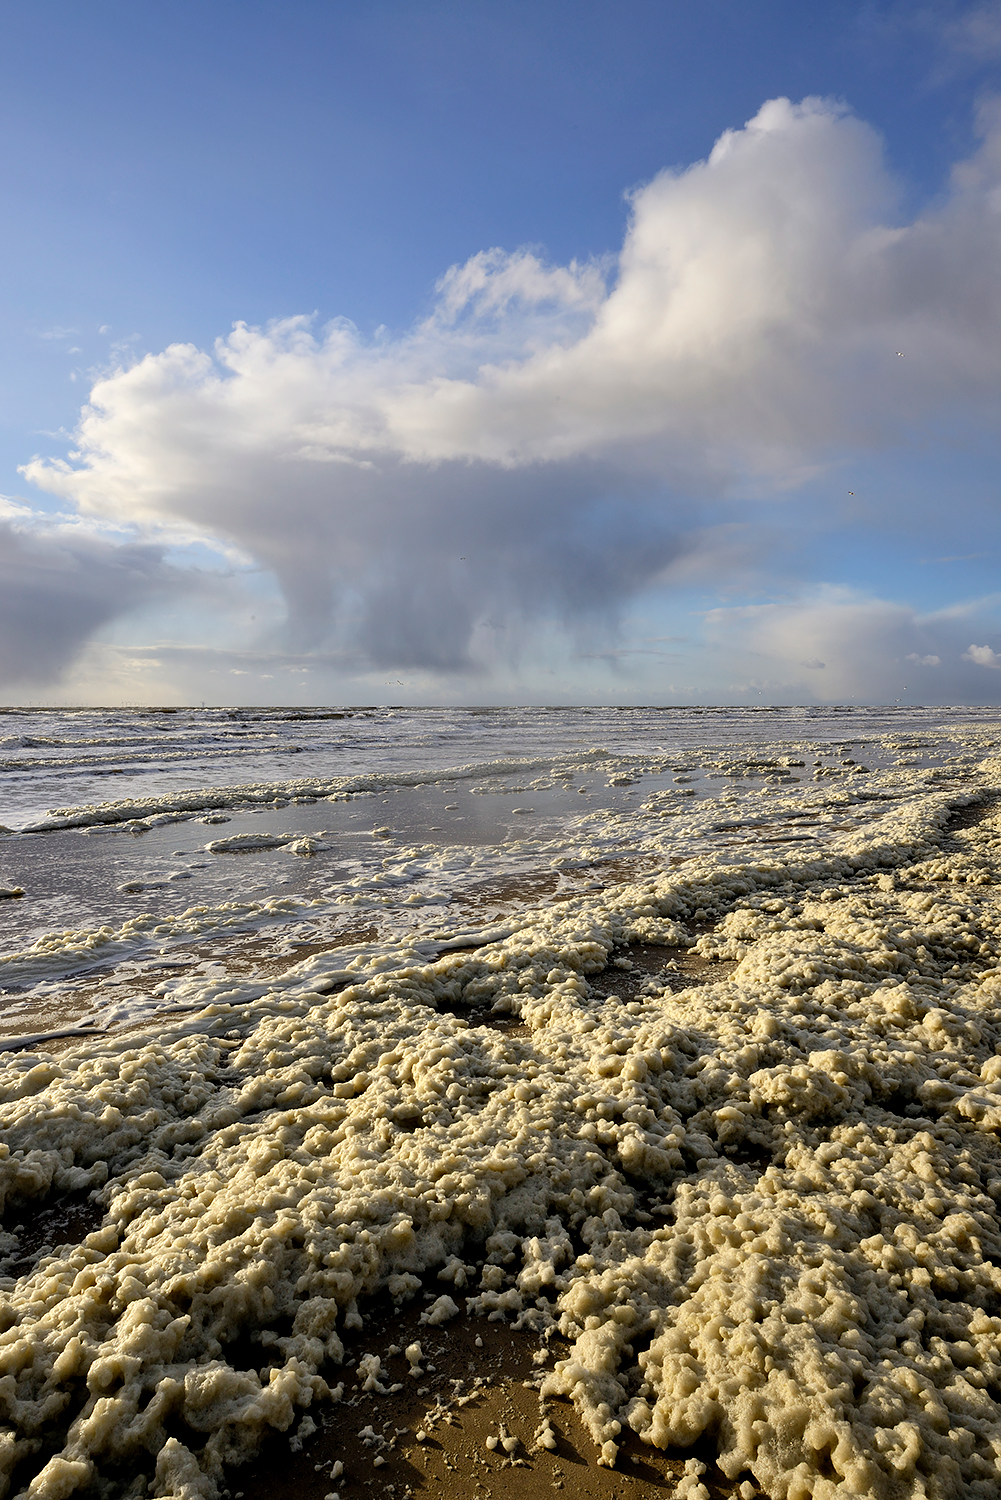 Regenbui en vlokken van aangespoeld schuimalg langs de vloedlijn tijdens storm op het strand van Wijk aan Zee.